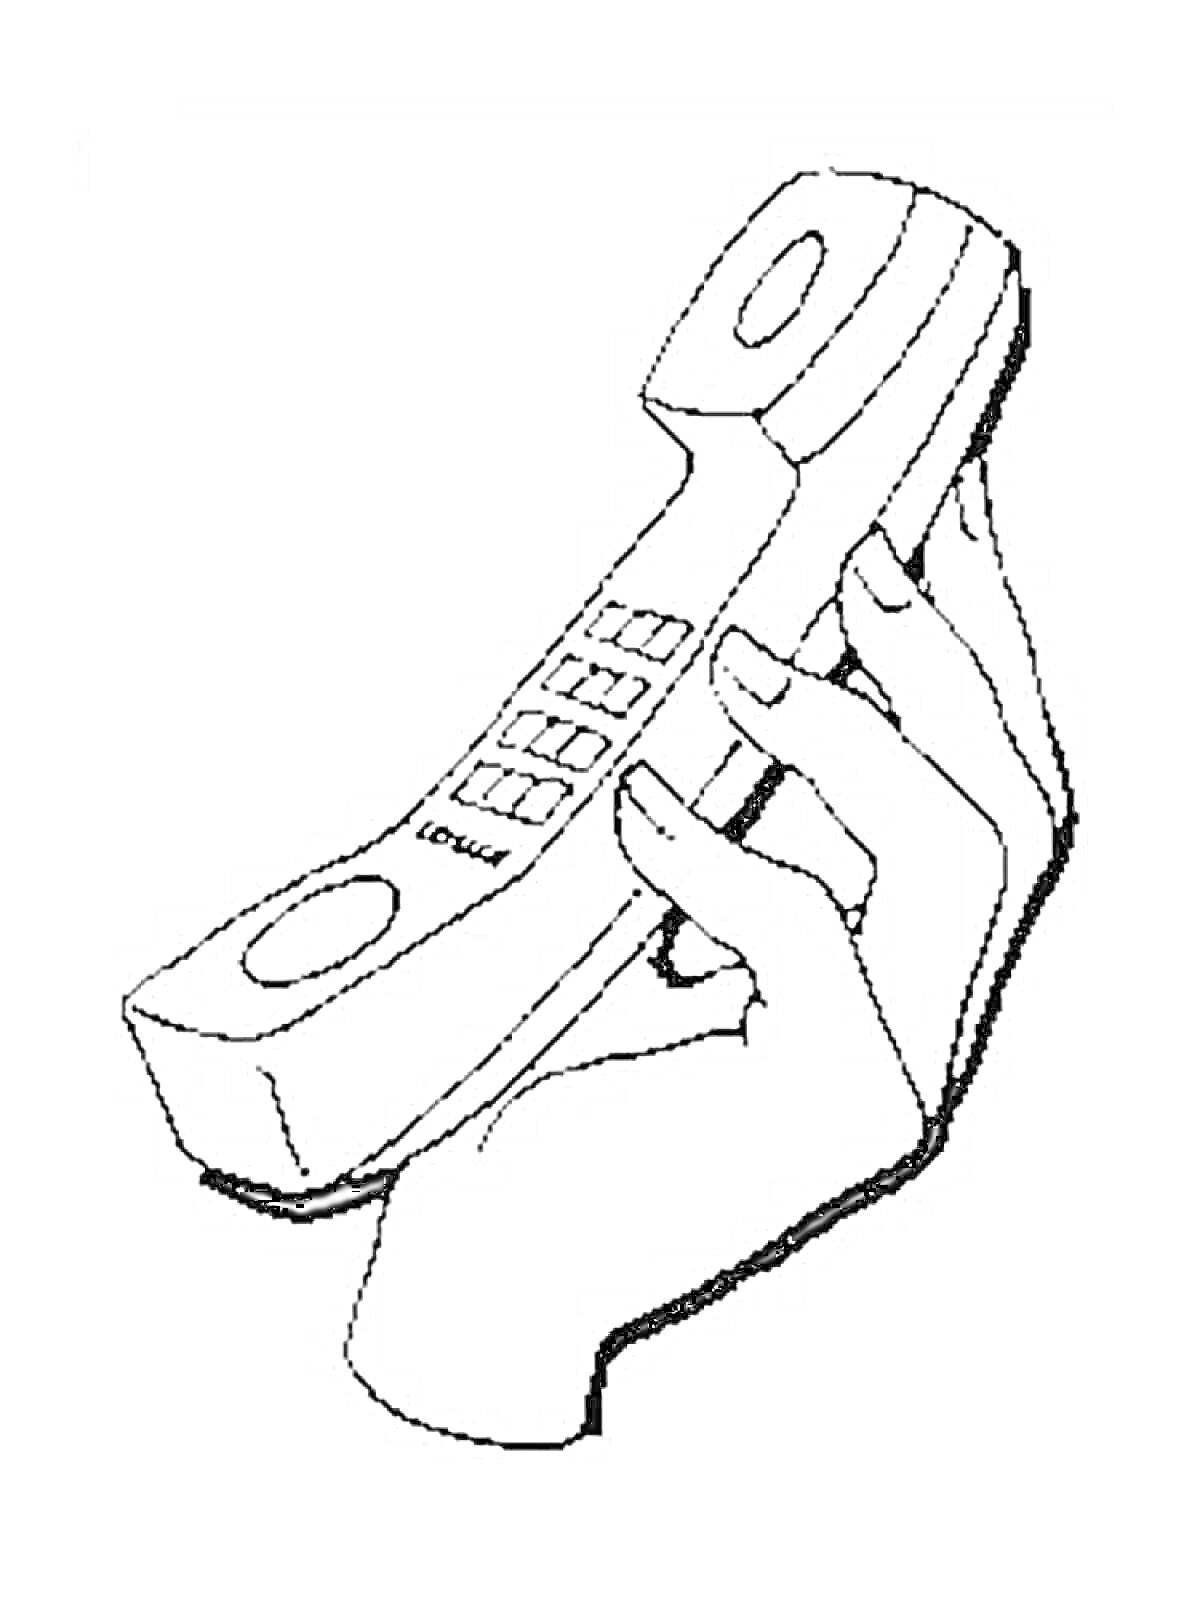 Рука держит телефонный аппарат с кнопками